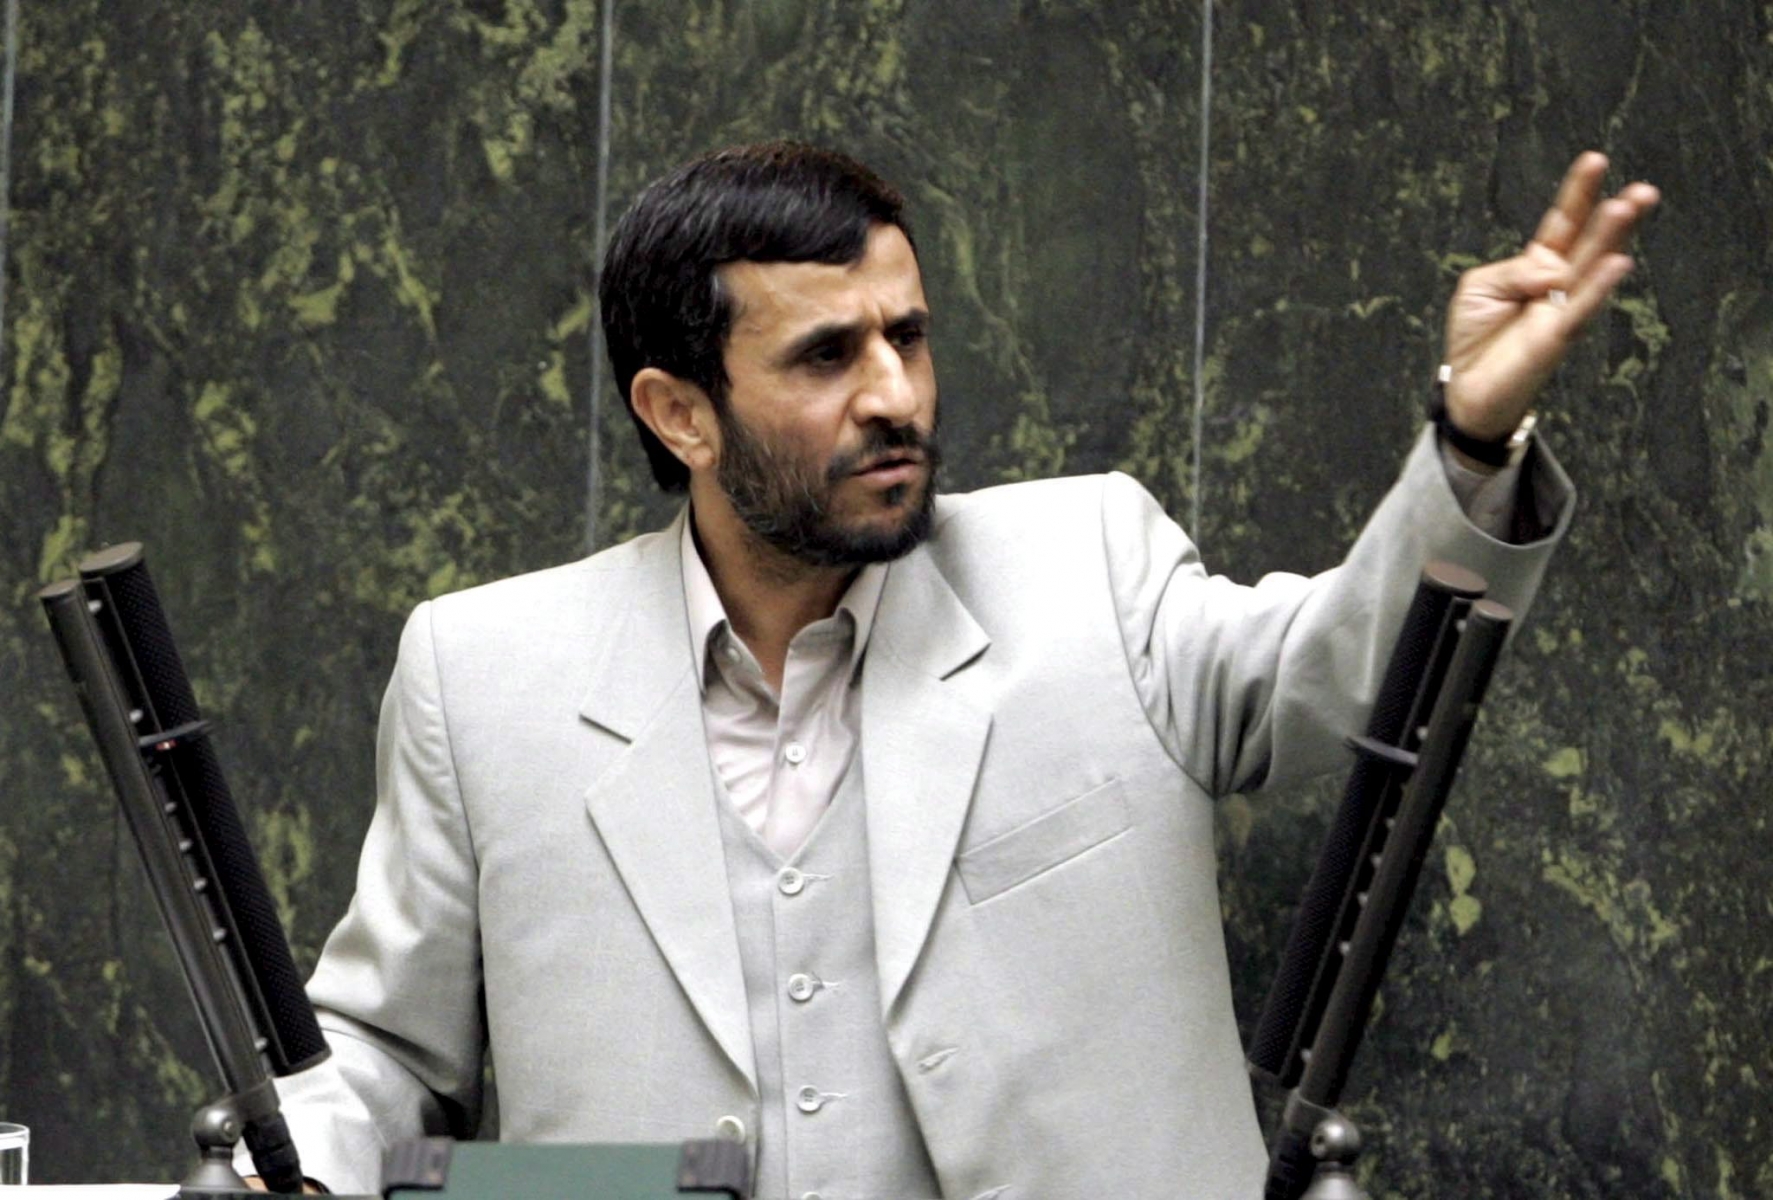 Le président iranien Mahmoud Ahmadinejad accuse les pouvoirs étrangers d'